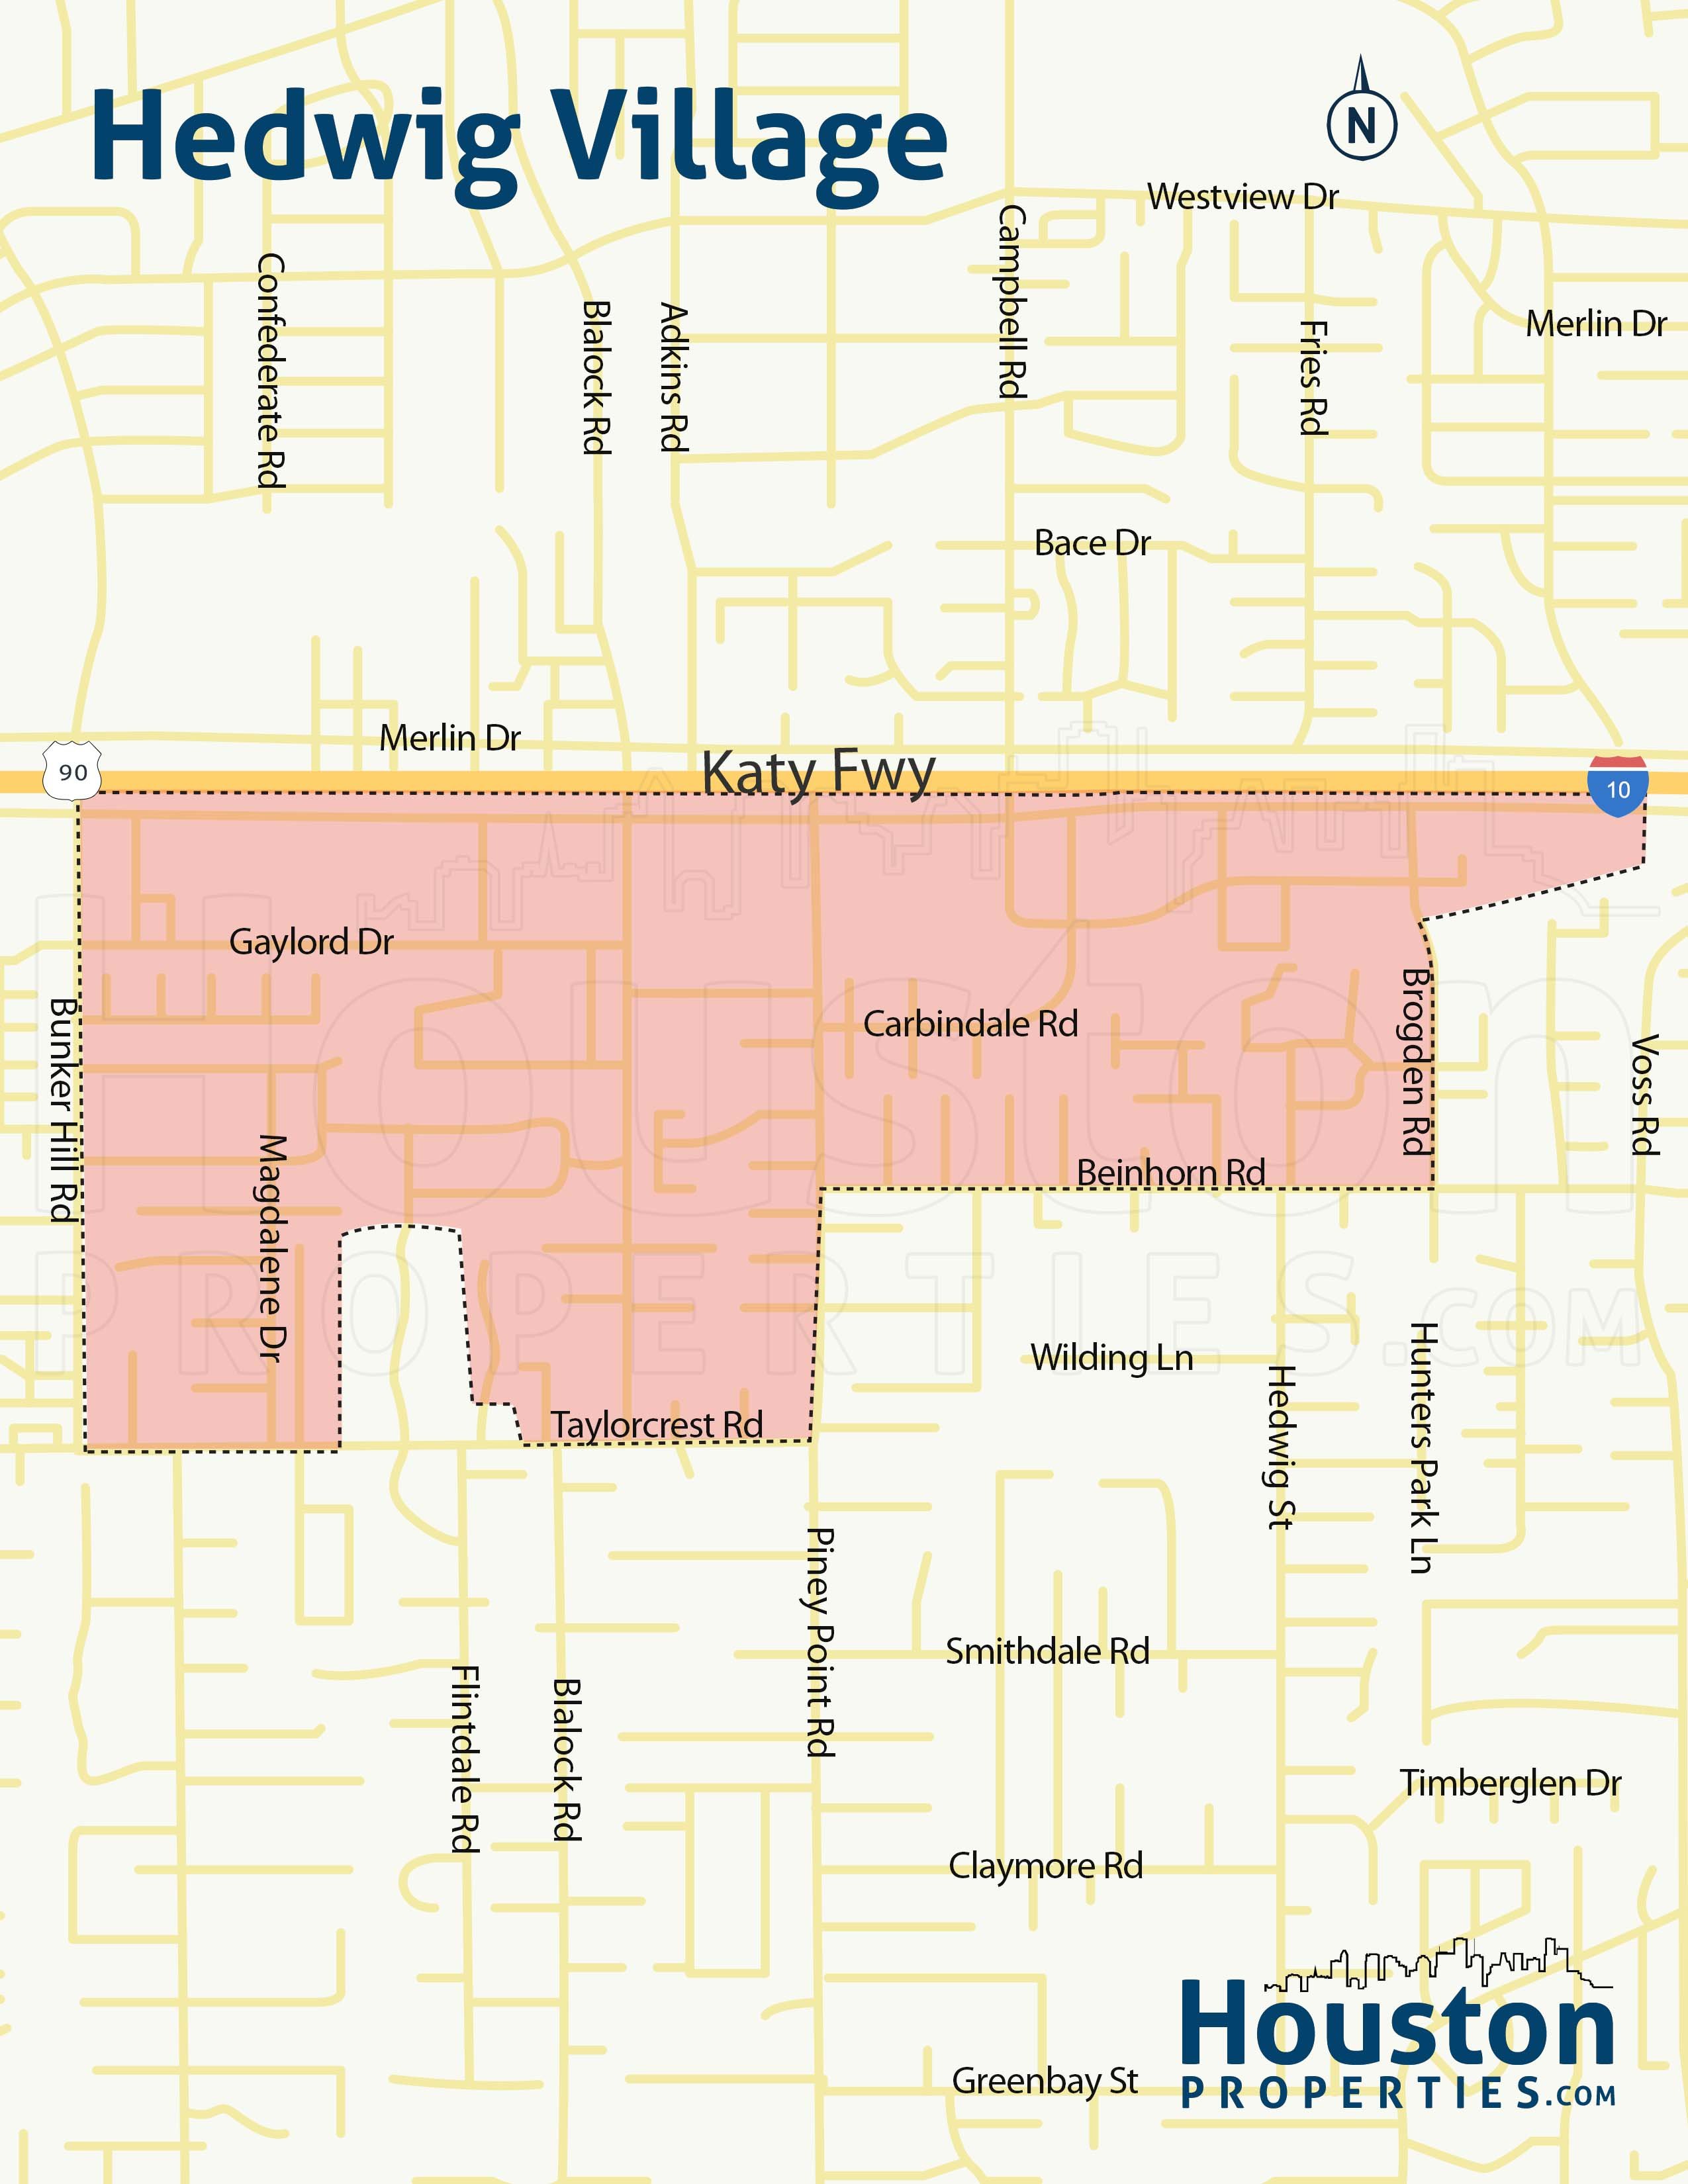 Hedwig neighborhood map